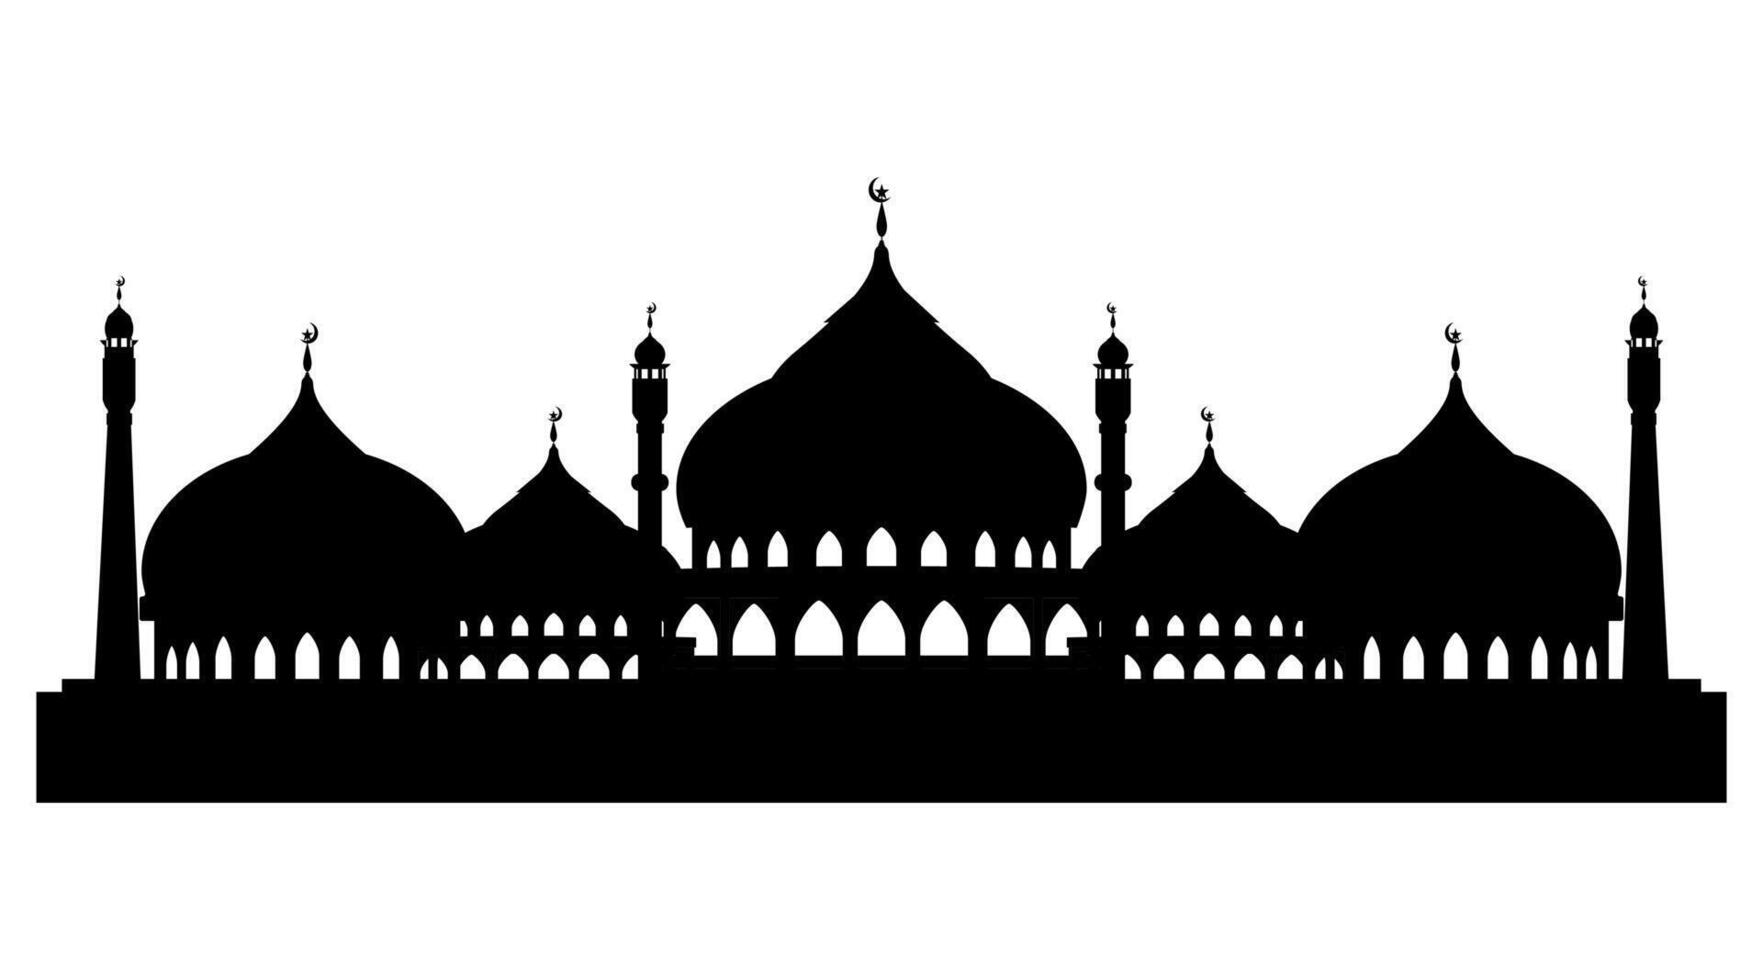 Muslim Moschee Silhouette auf Weiß Hintergrund, Vektor Arabisch die Architektur Panorama,orientalisch Gebäude Wahrzeichen östlichen Religion, Design Element zum eid al adha, eid al Fitr, Mubarak, Muharram, Ramadan kareem